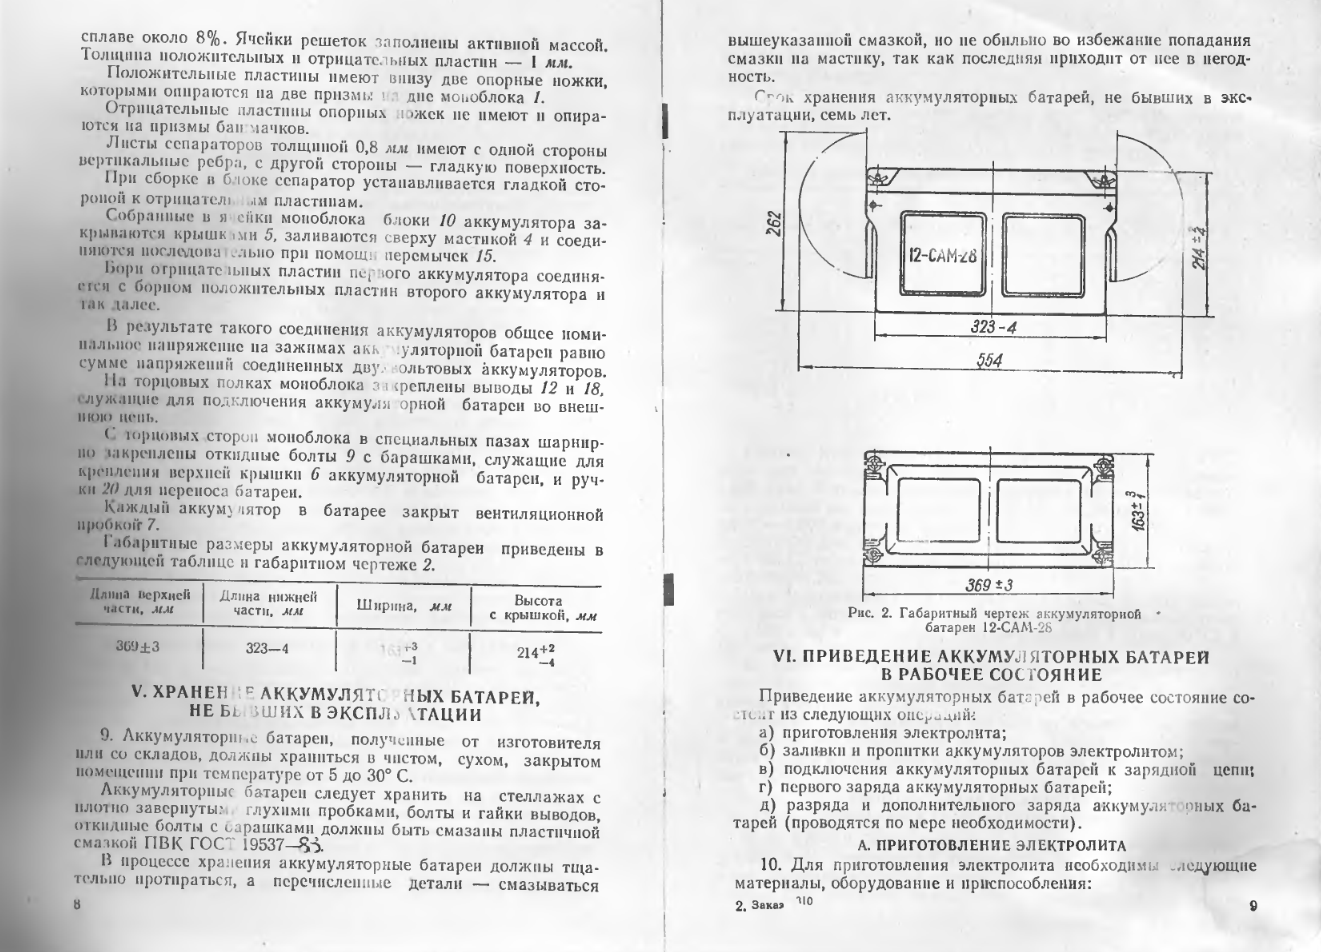 12-САМ-28. Техническое описание и инструкция по эксплуатации аккумуляторных батарей 12-САМ-28